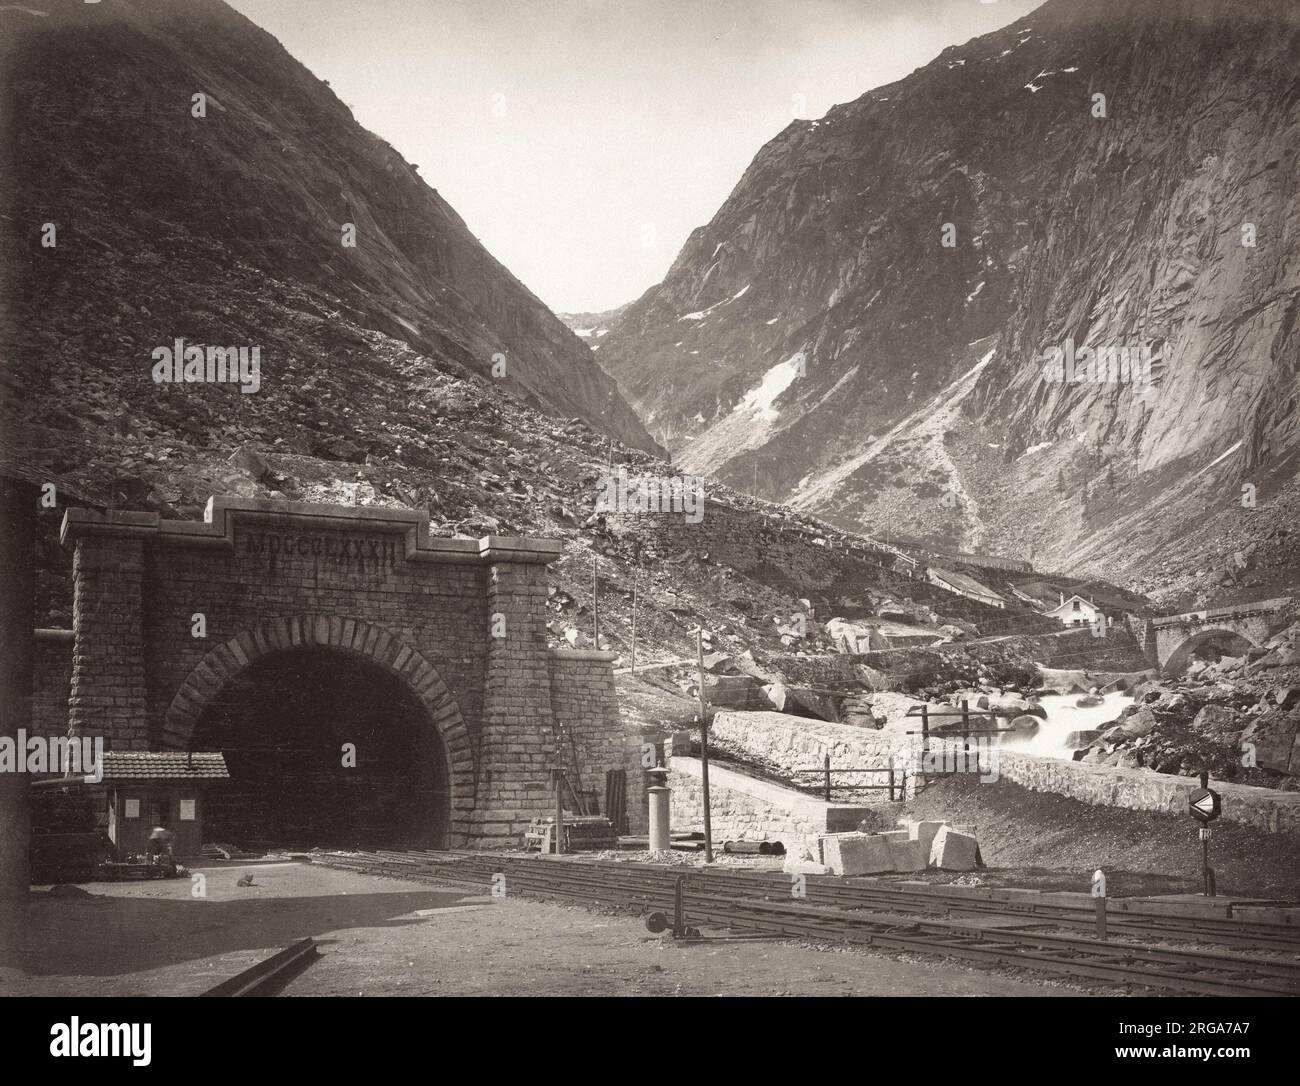 Gotthard-Eisenbahntunnel, Schweiz der Gotthard-Tunnel (Gotthardtunnel) ist ein 15 Kilometer langer Eisenbahntunnel und bildet den Gipfel der Gotthard-Bahn in der Schweiz. Er verbindet Goschenen mit Airolo und war der erste Tunnel durch das Saint-Gotthard-Massiv, um den St. Gotthard-Pass zu umgehen. Er ist als ein zweigleisiger, normalspuriger Tunnel gebaut.der Gotthard-Tunnel war bei seiner Eröffnung im Jahr 1882 der längste Tunnel der Welt. Stockfoto